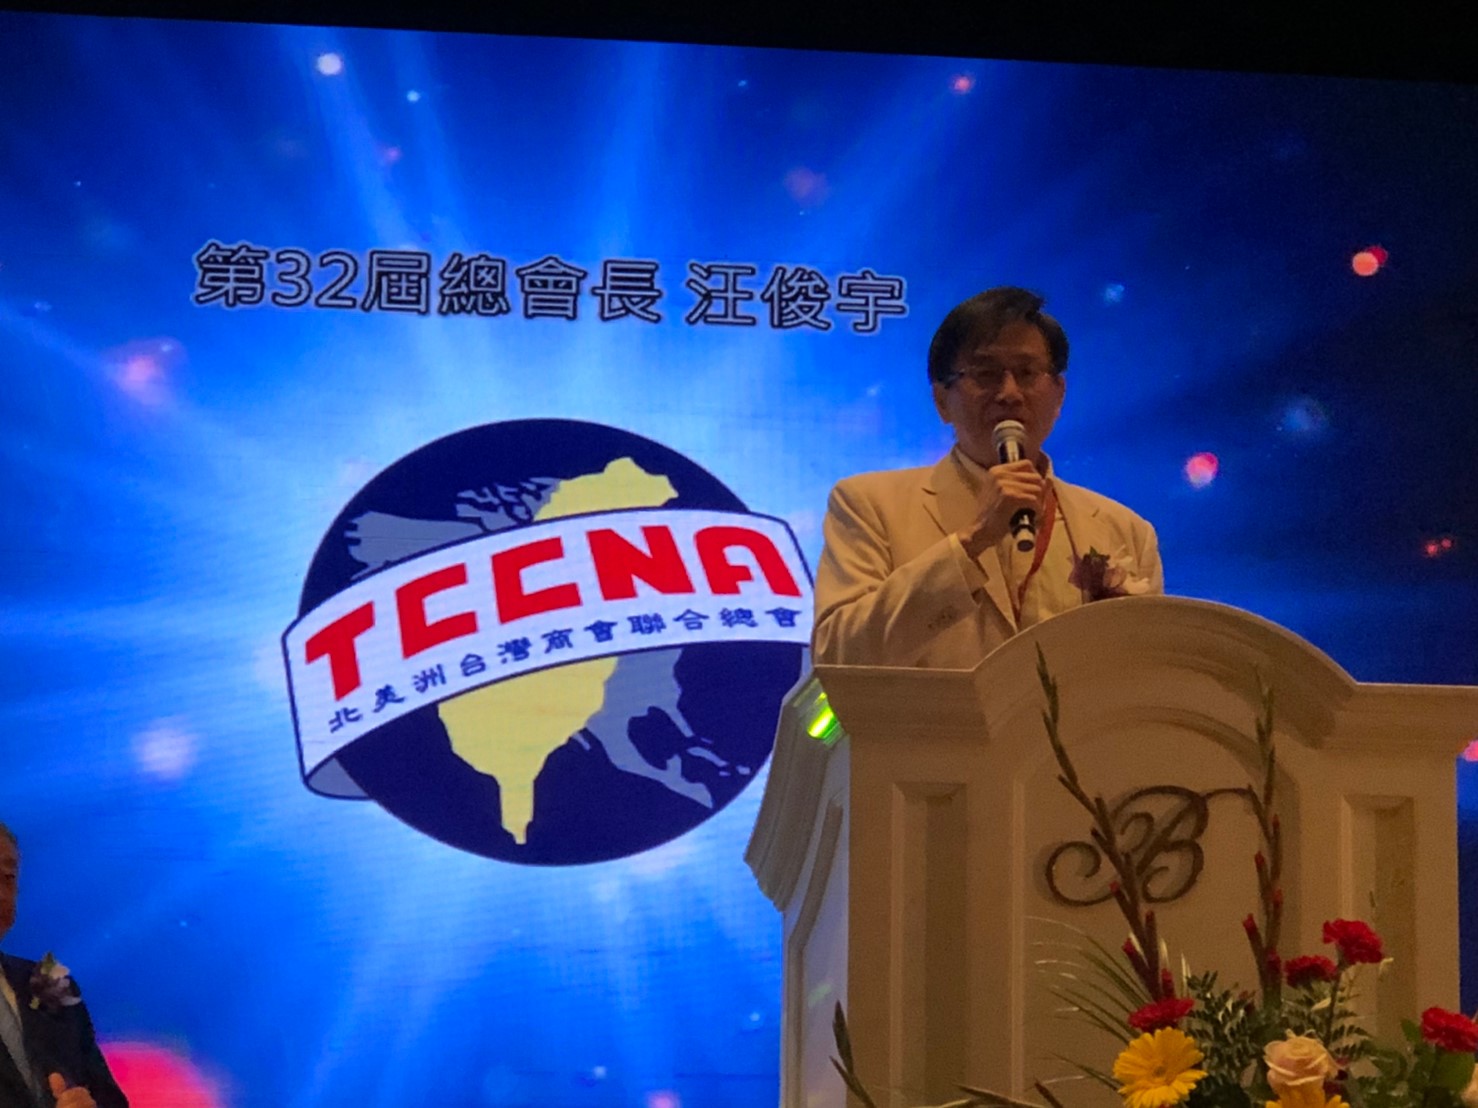 TCCNA 32 President - Jerry Wang 汪俊宇